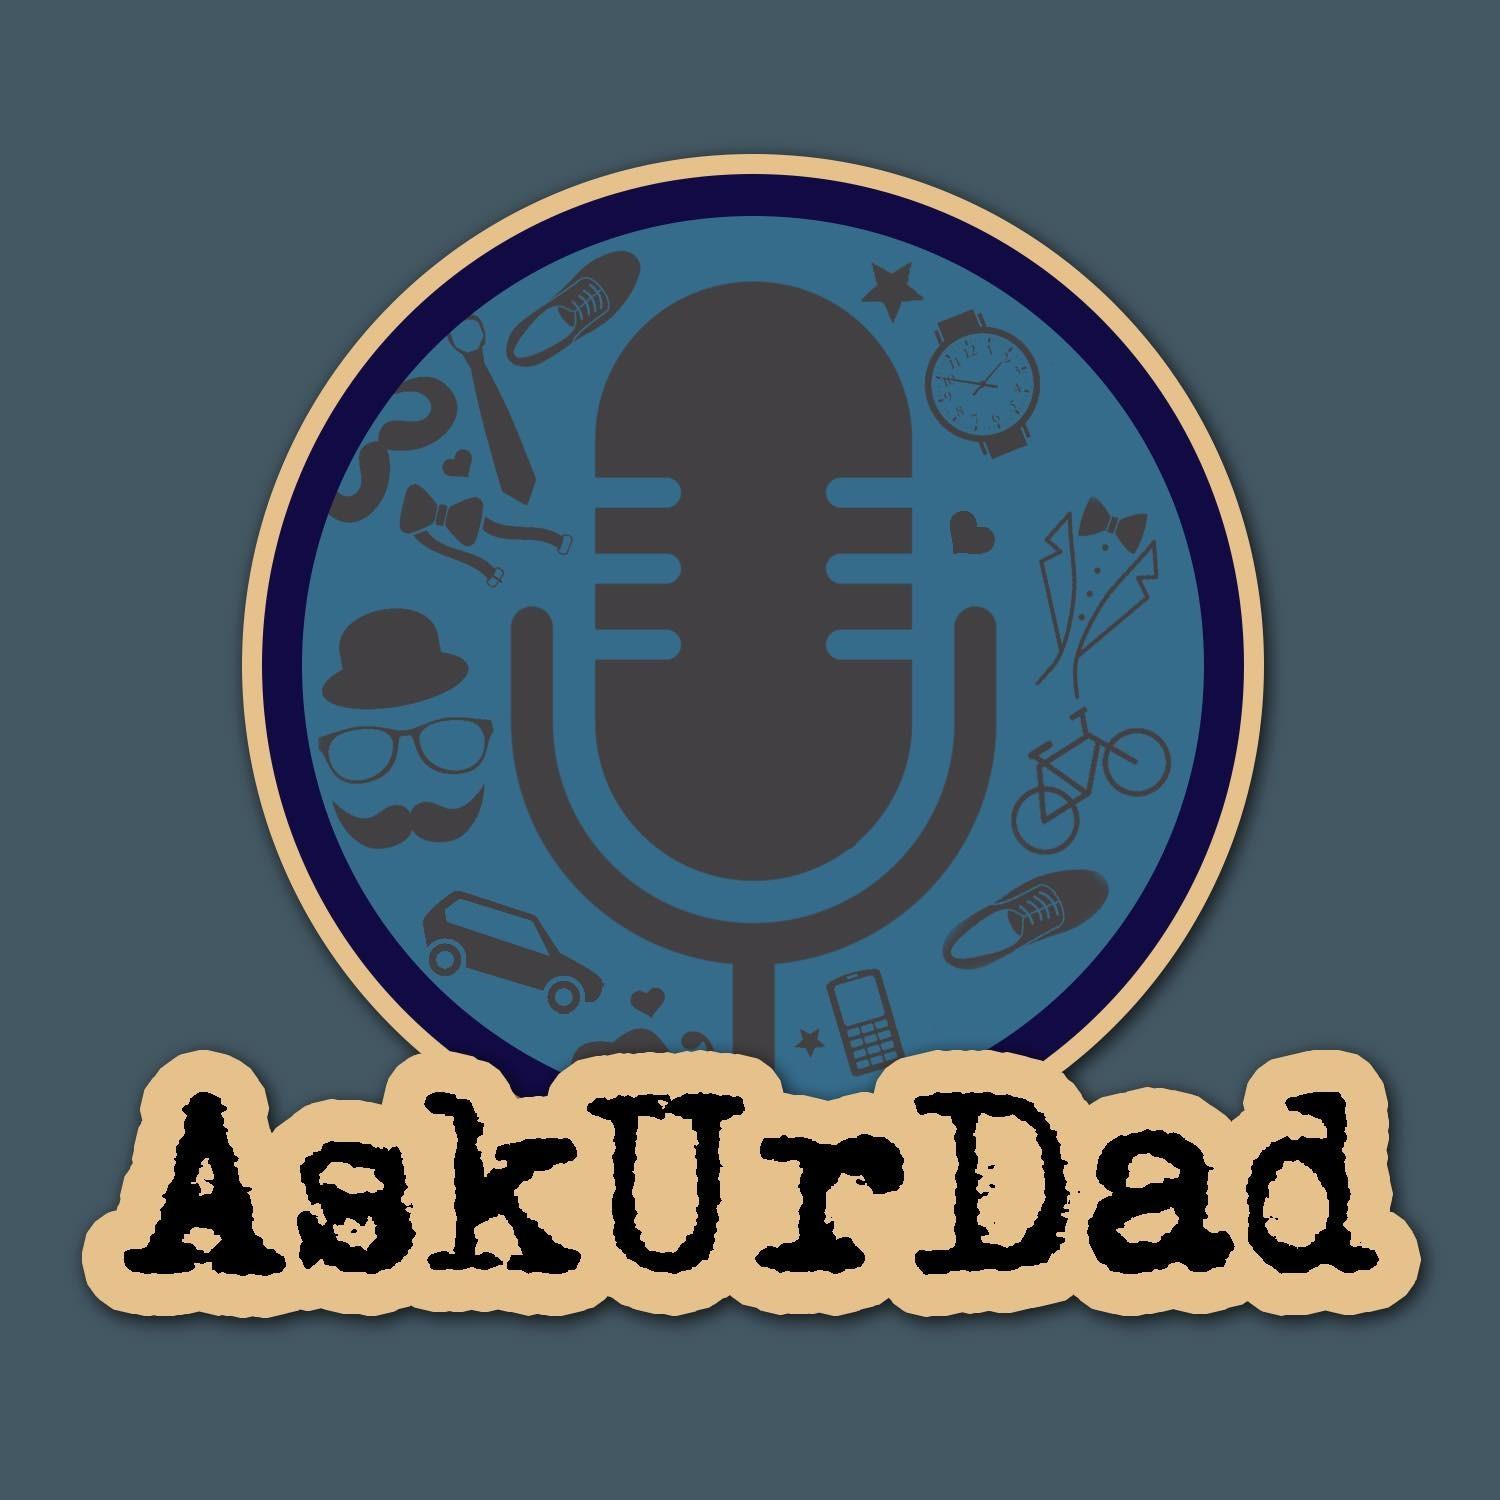 Ask Ur Dad